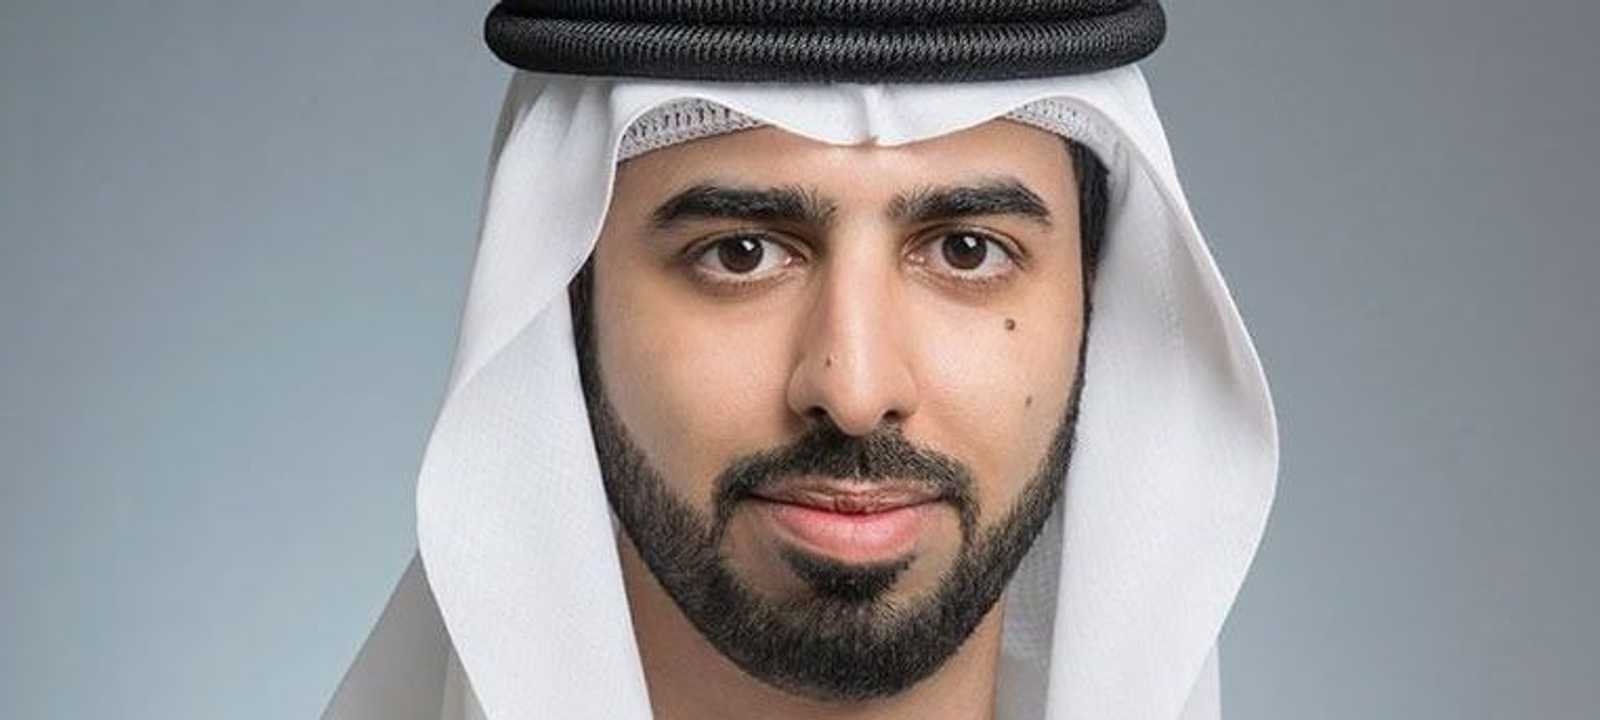 عمر بن سلطان العلماء وزير دولة الإمارات للذكاء الاصطناعي